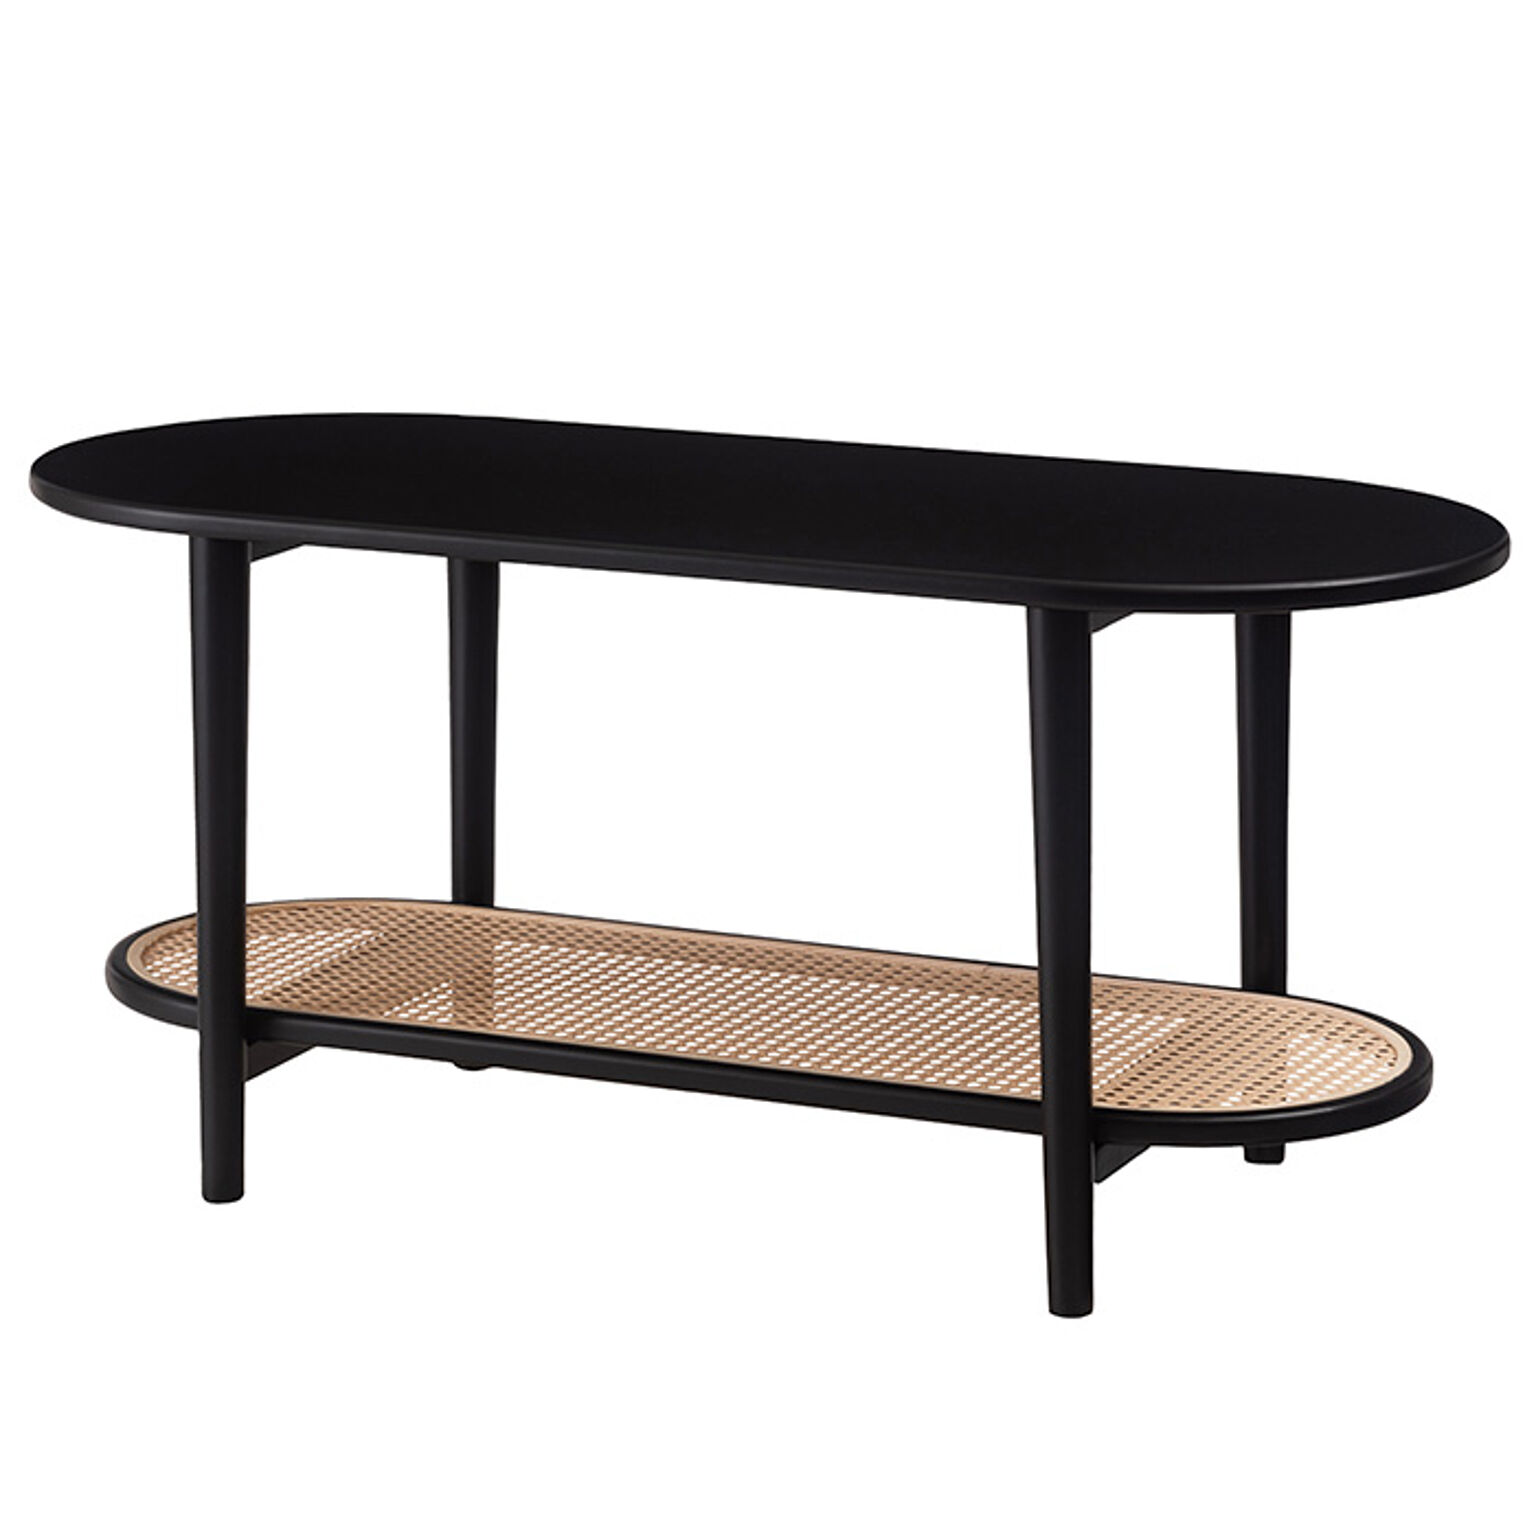 ラタン風 センターテーブル テーブル リビングテーブル ベッド サイド 木製 ベッドサイド ソファ 円形 ナチュラル ひとり暮らし 幅100